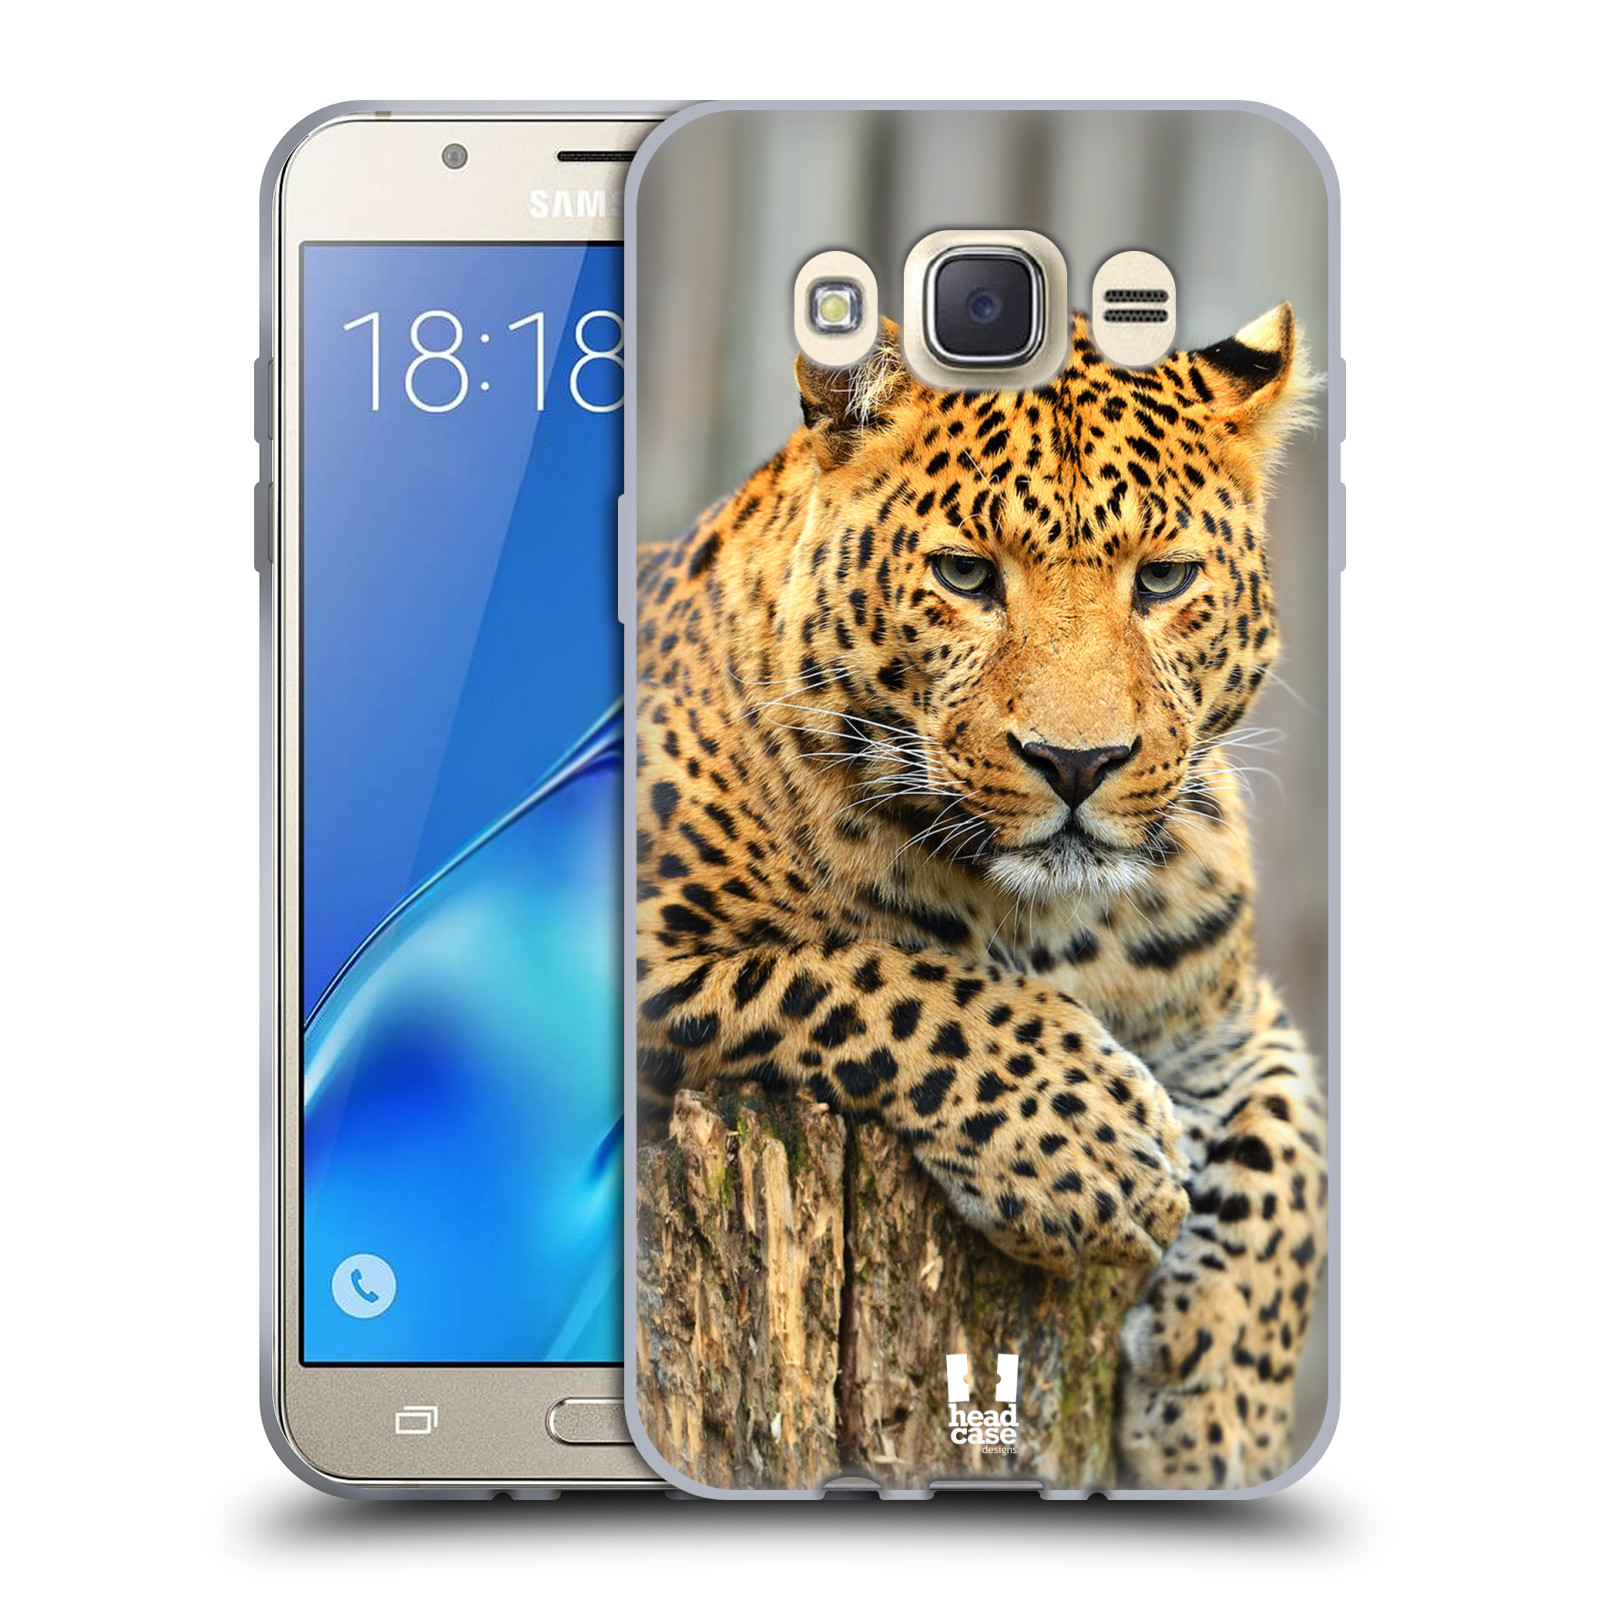 HEAD CASE silikonový obal, kryt na mobil Samsung Galaxy J7 2016 (J710, J710F) vzor Divočina, Divoký život a zvířata foto LEOPARD PORTRÉT